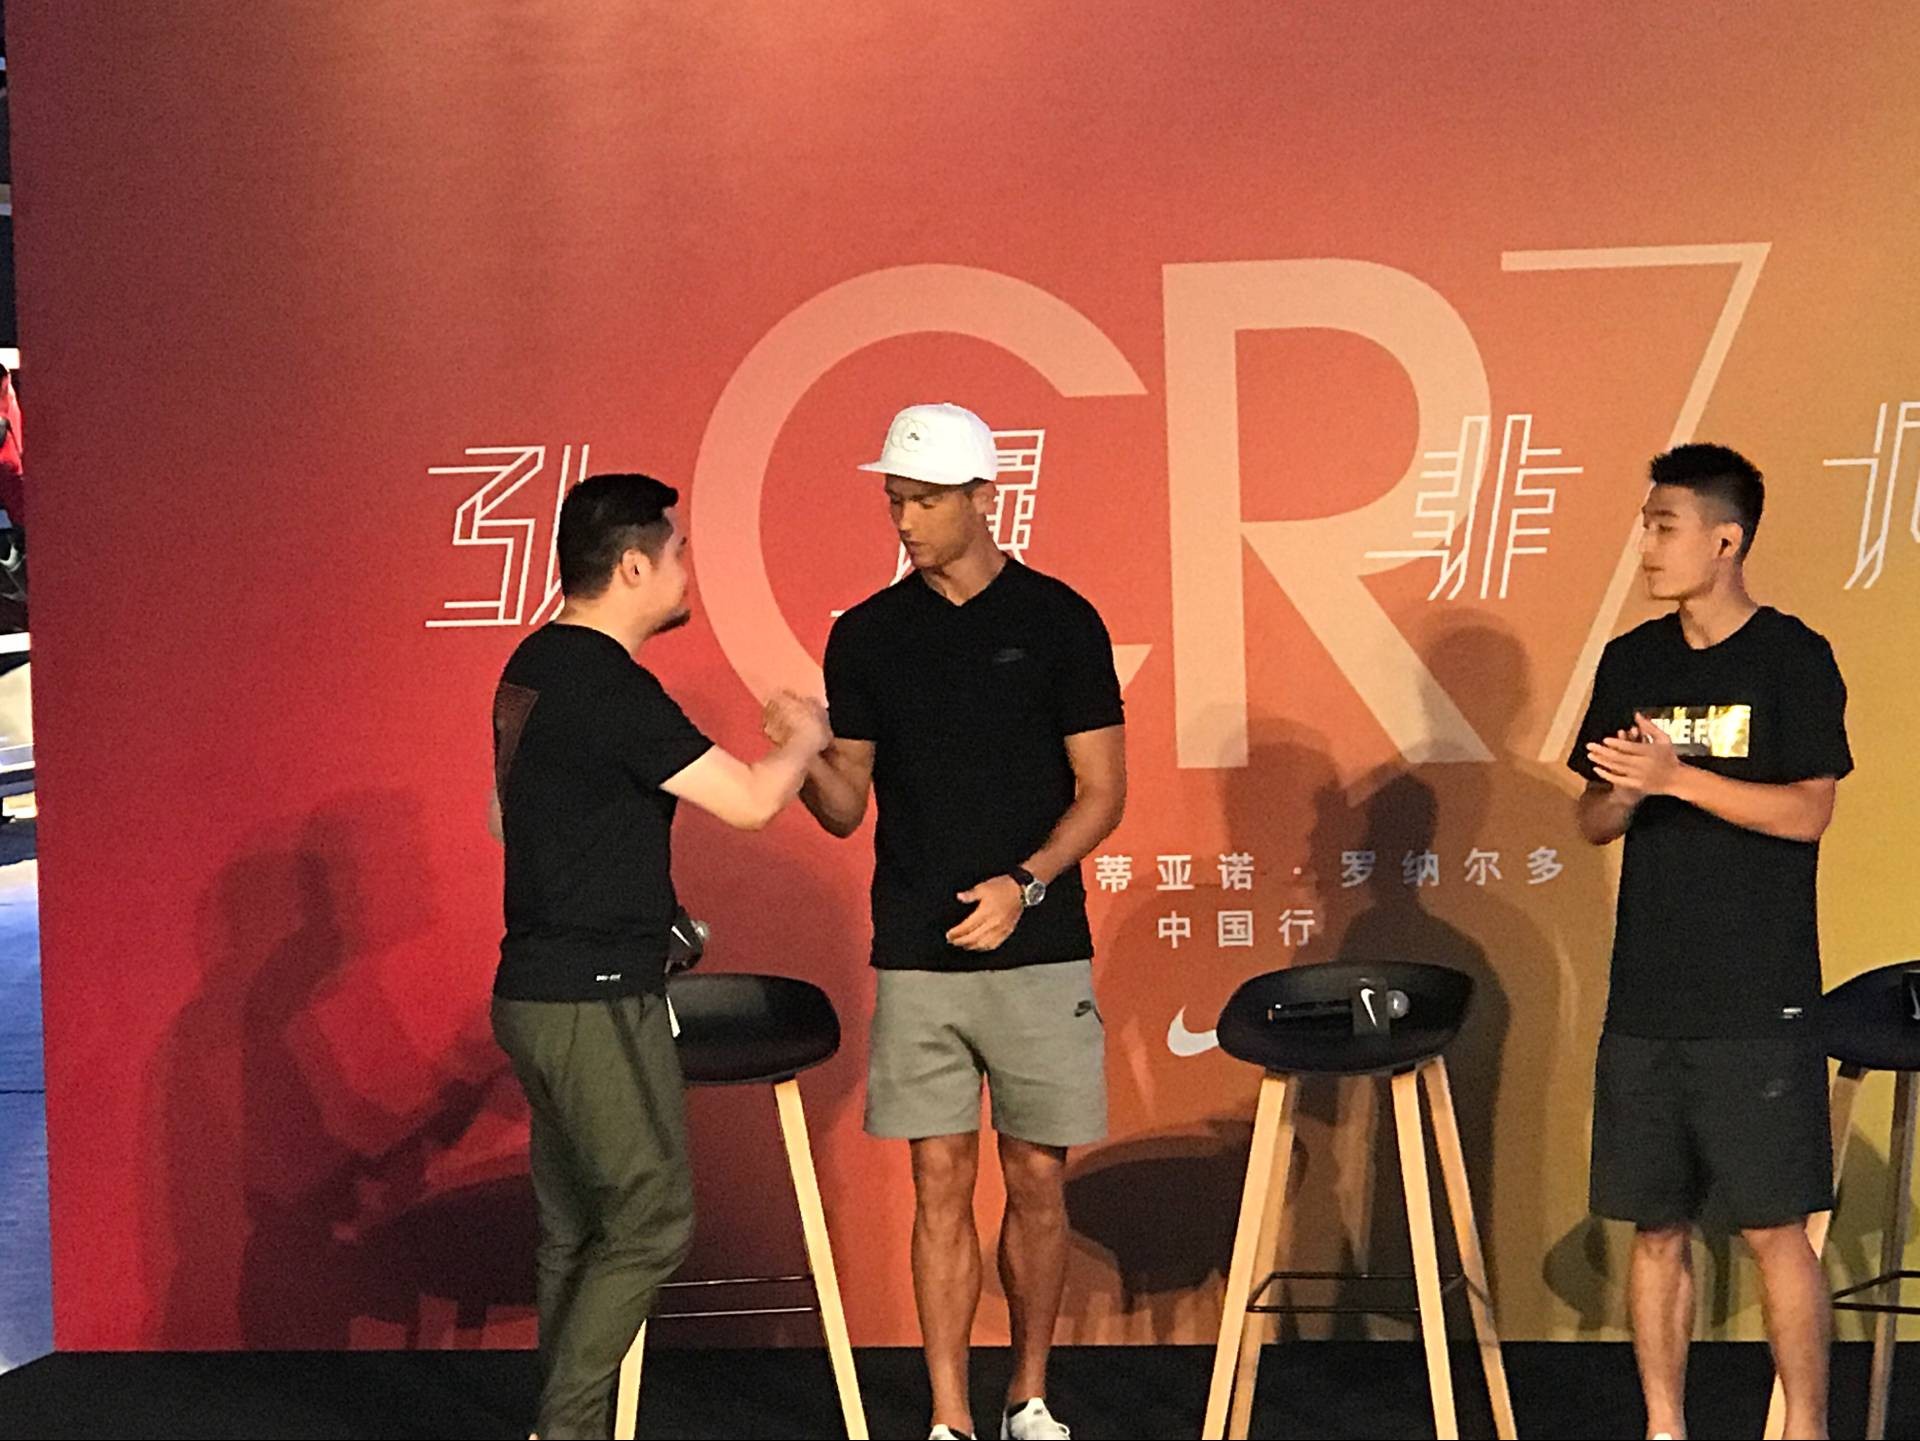 图集:C罗在北京出席活动,与武磊见面交换球衣